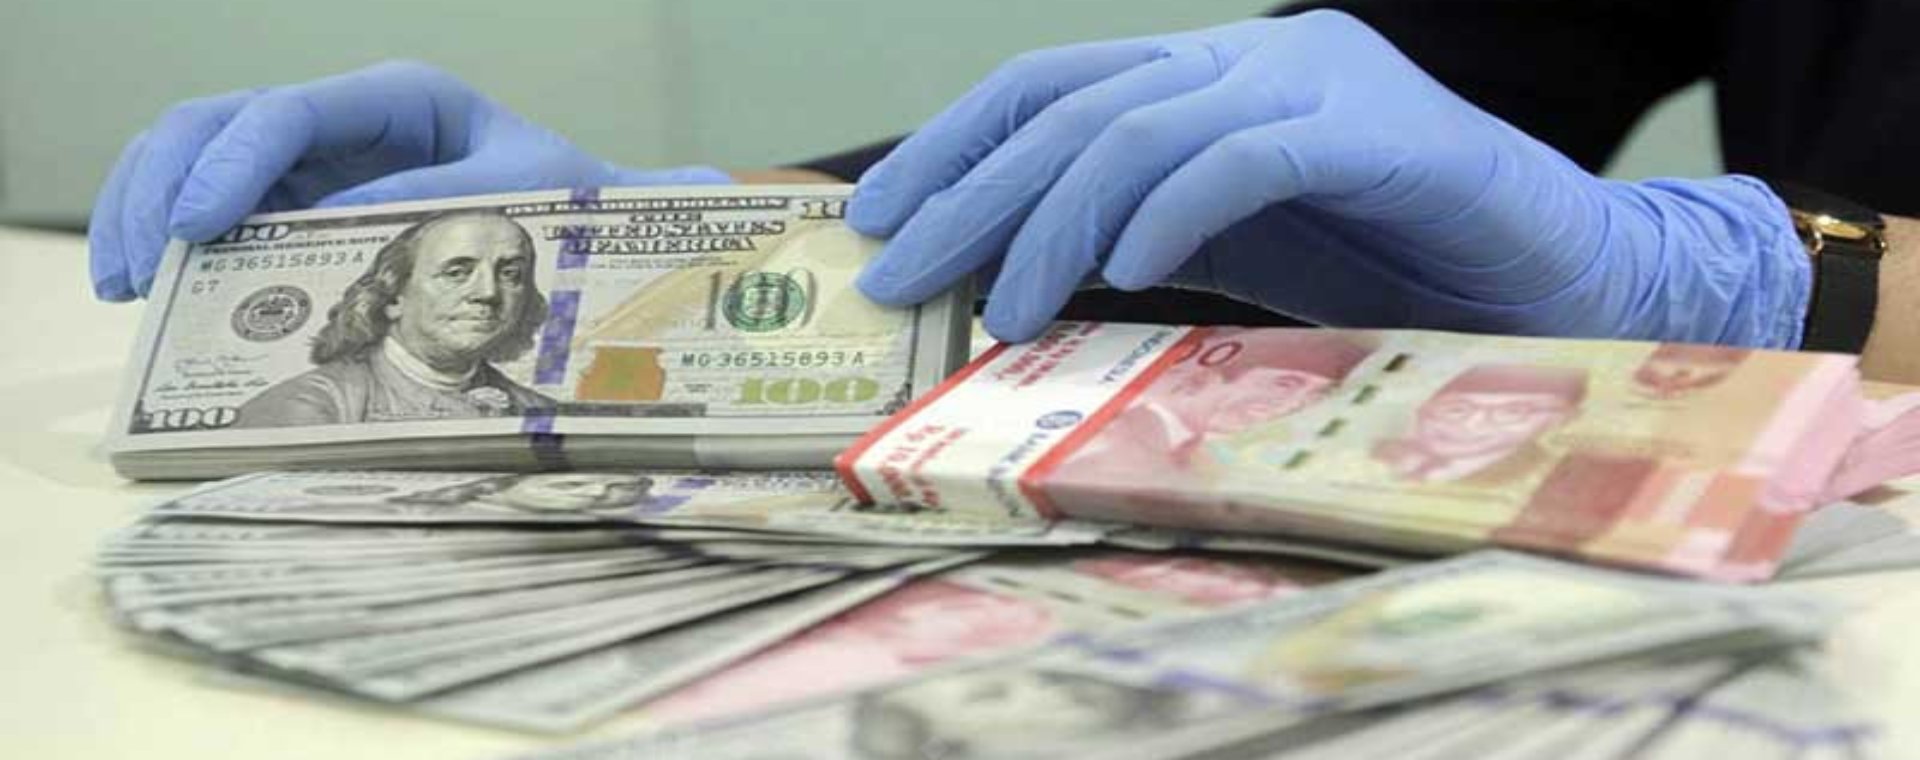 Karyawan merapikan uang dolar dan rupiah di salah satu bank di Jakarta, Kamis (14/1/2021). Bisnis - Himawan L Nugraha